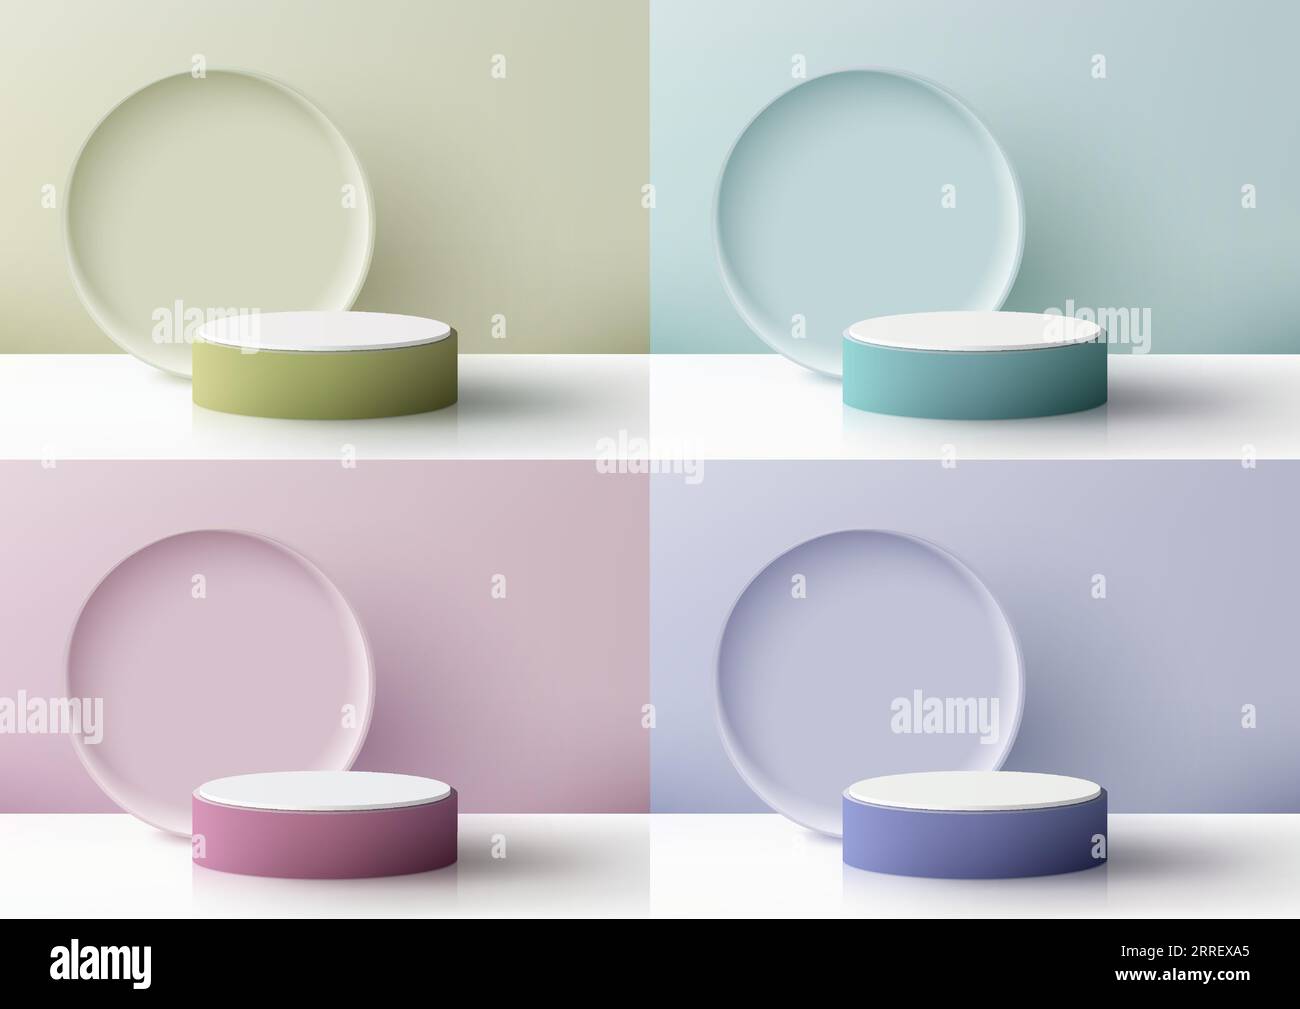 Weiche 3D-Farben und weißes Podium mit kreisförmigem Hintergrund auf pastellfarbenem Hintergrund sind ein perfektes Modell für die Produktpräsentation. Vektorillustration Stock Vektor